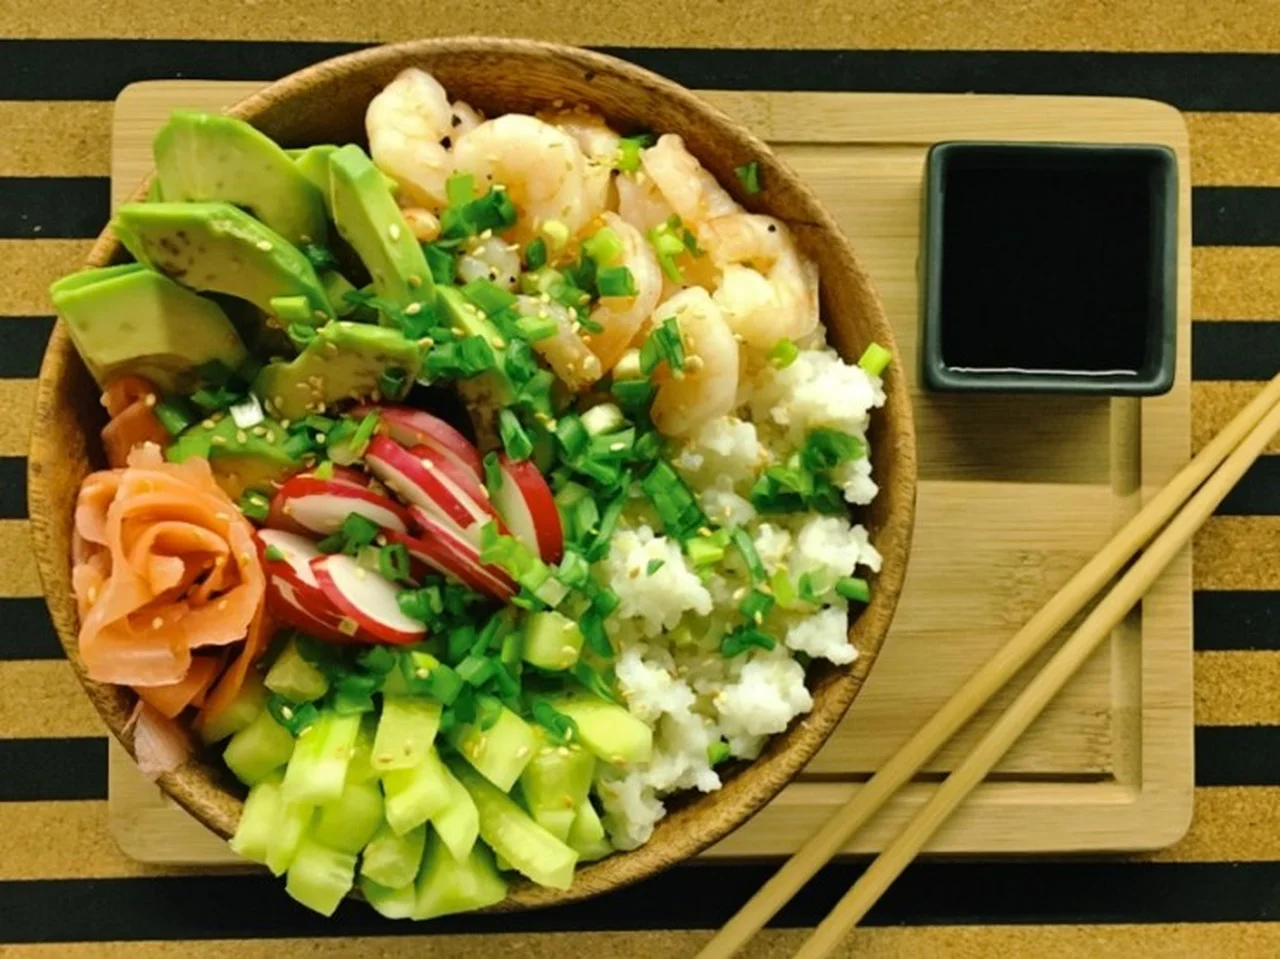 Piątek: Sushi bowl, czyli sushi bez zawijania